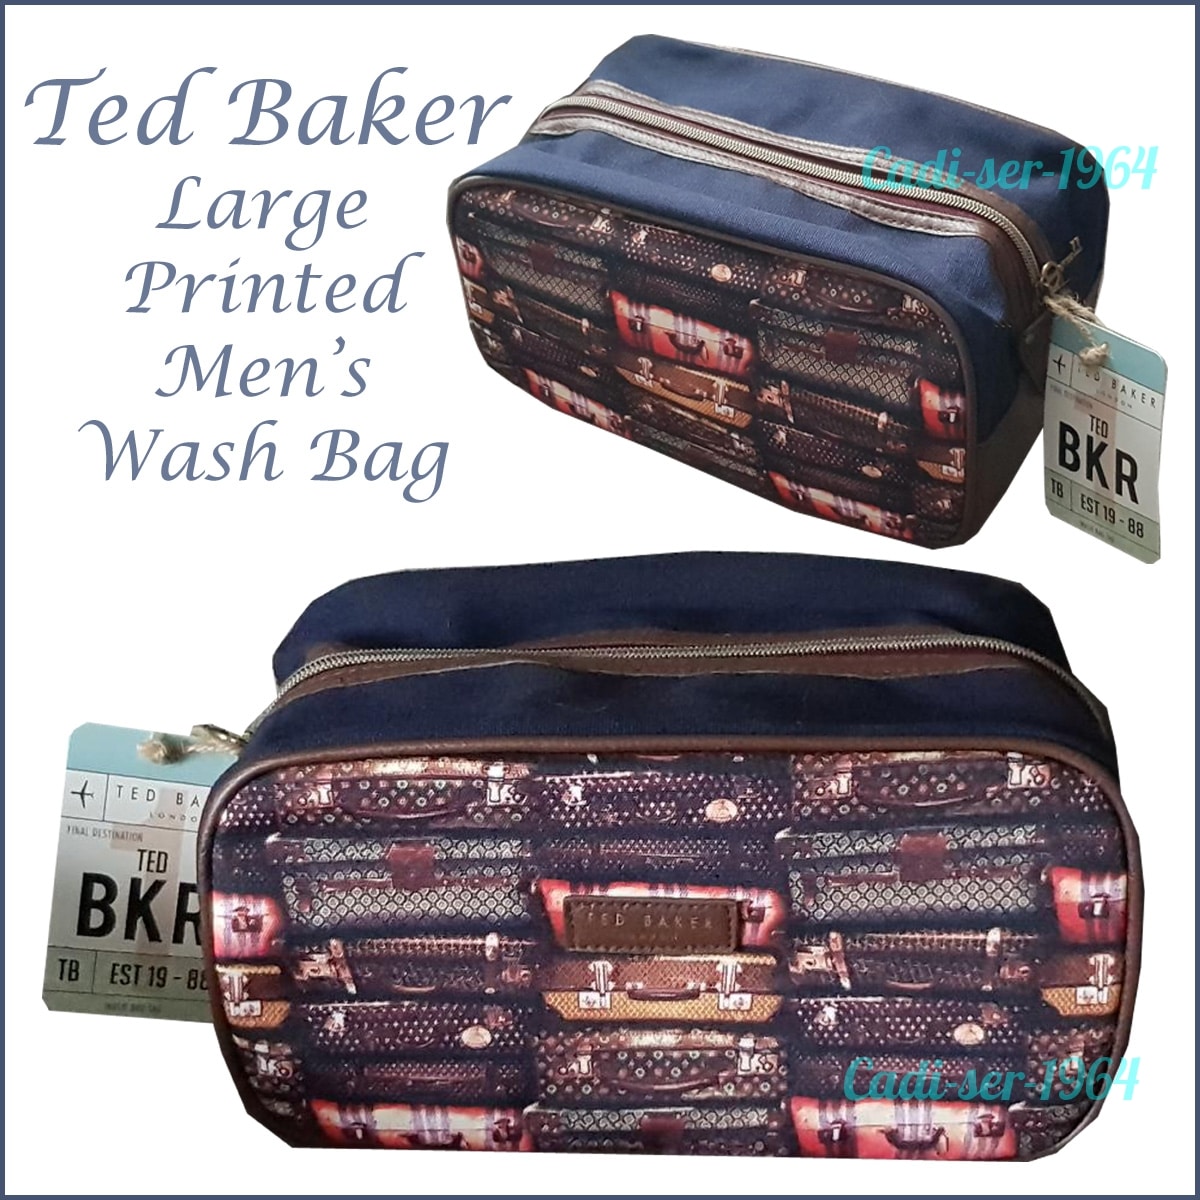 TED BAKER Large Printed Men